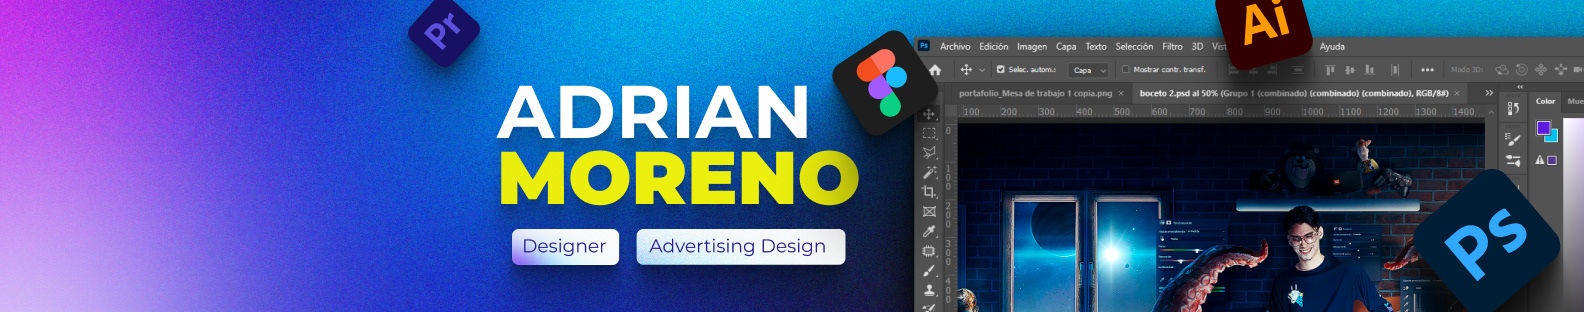 Adrian Moreno's profile banner